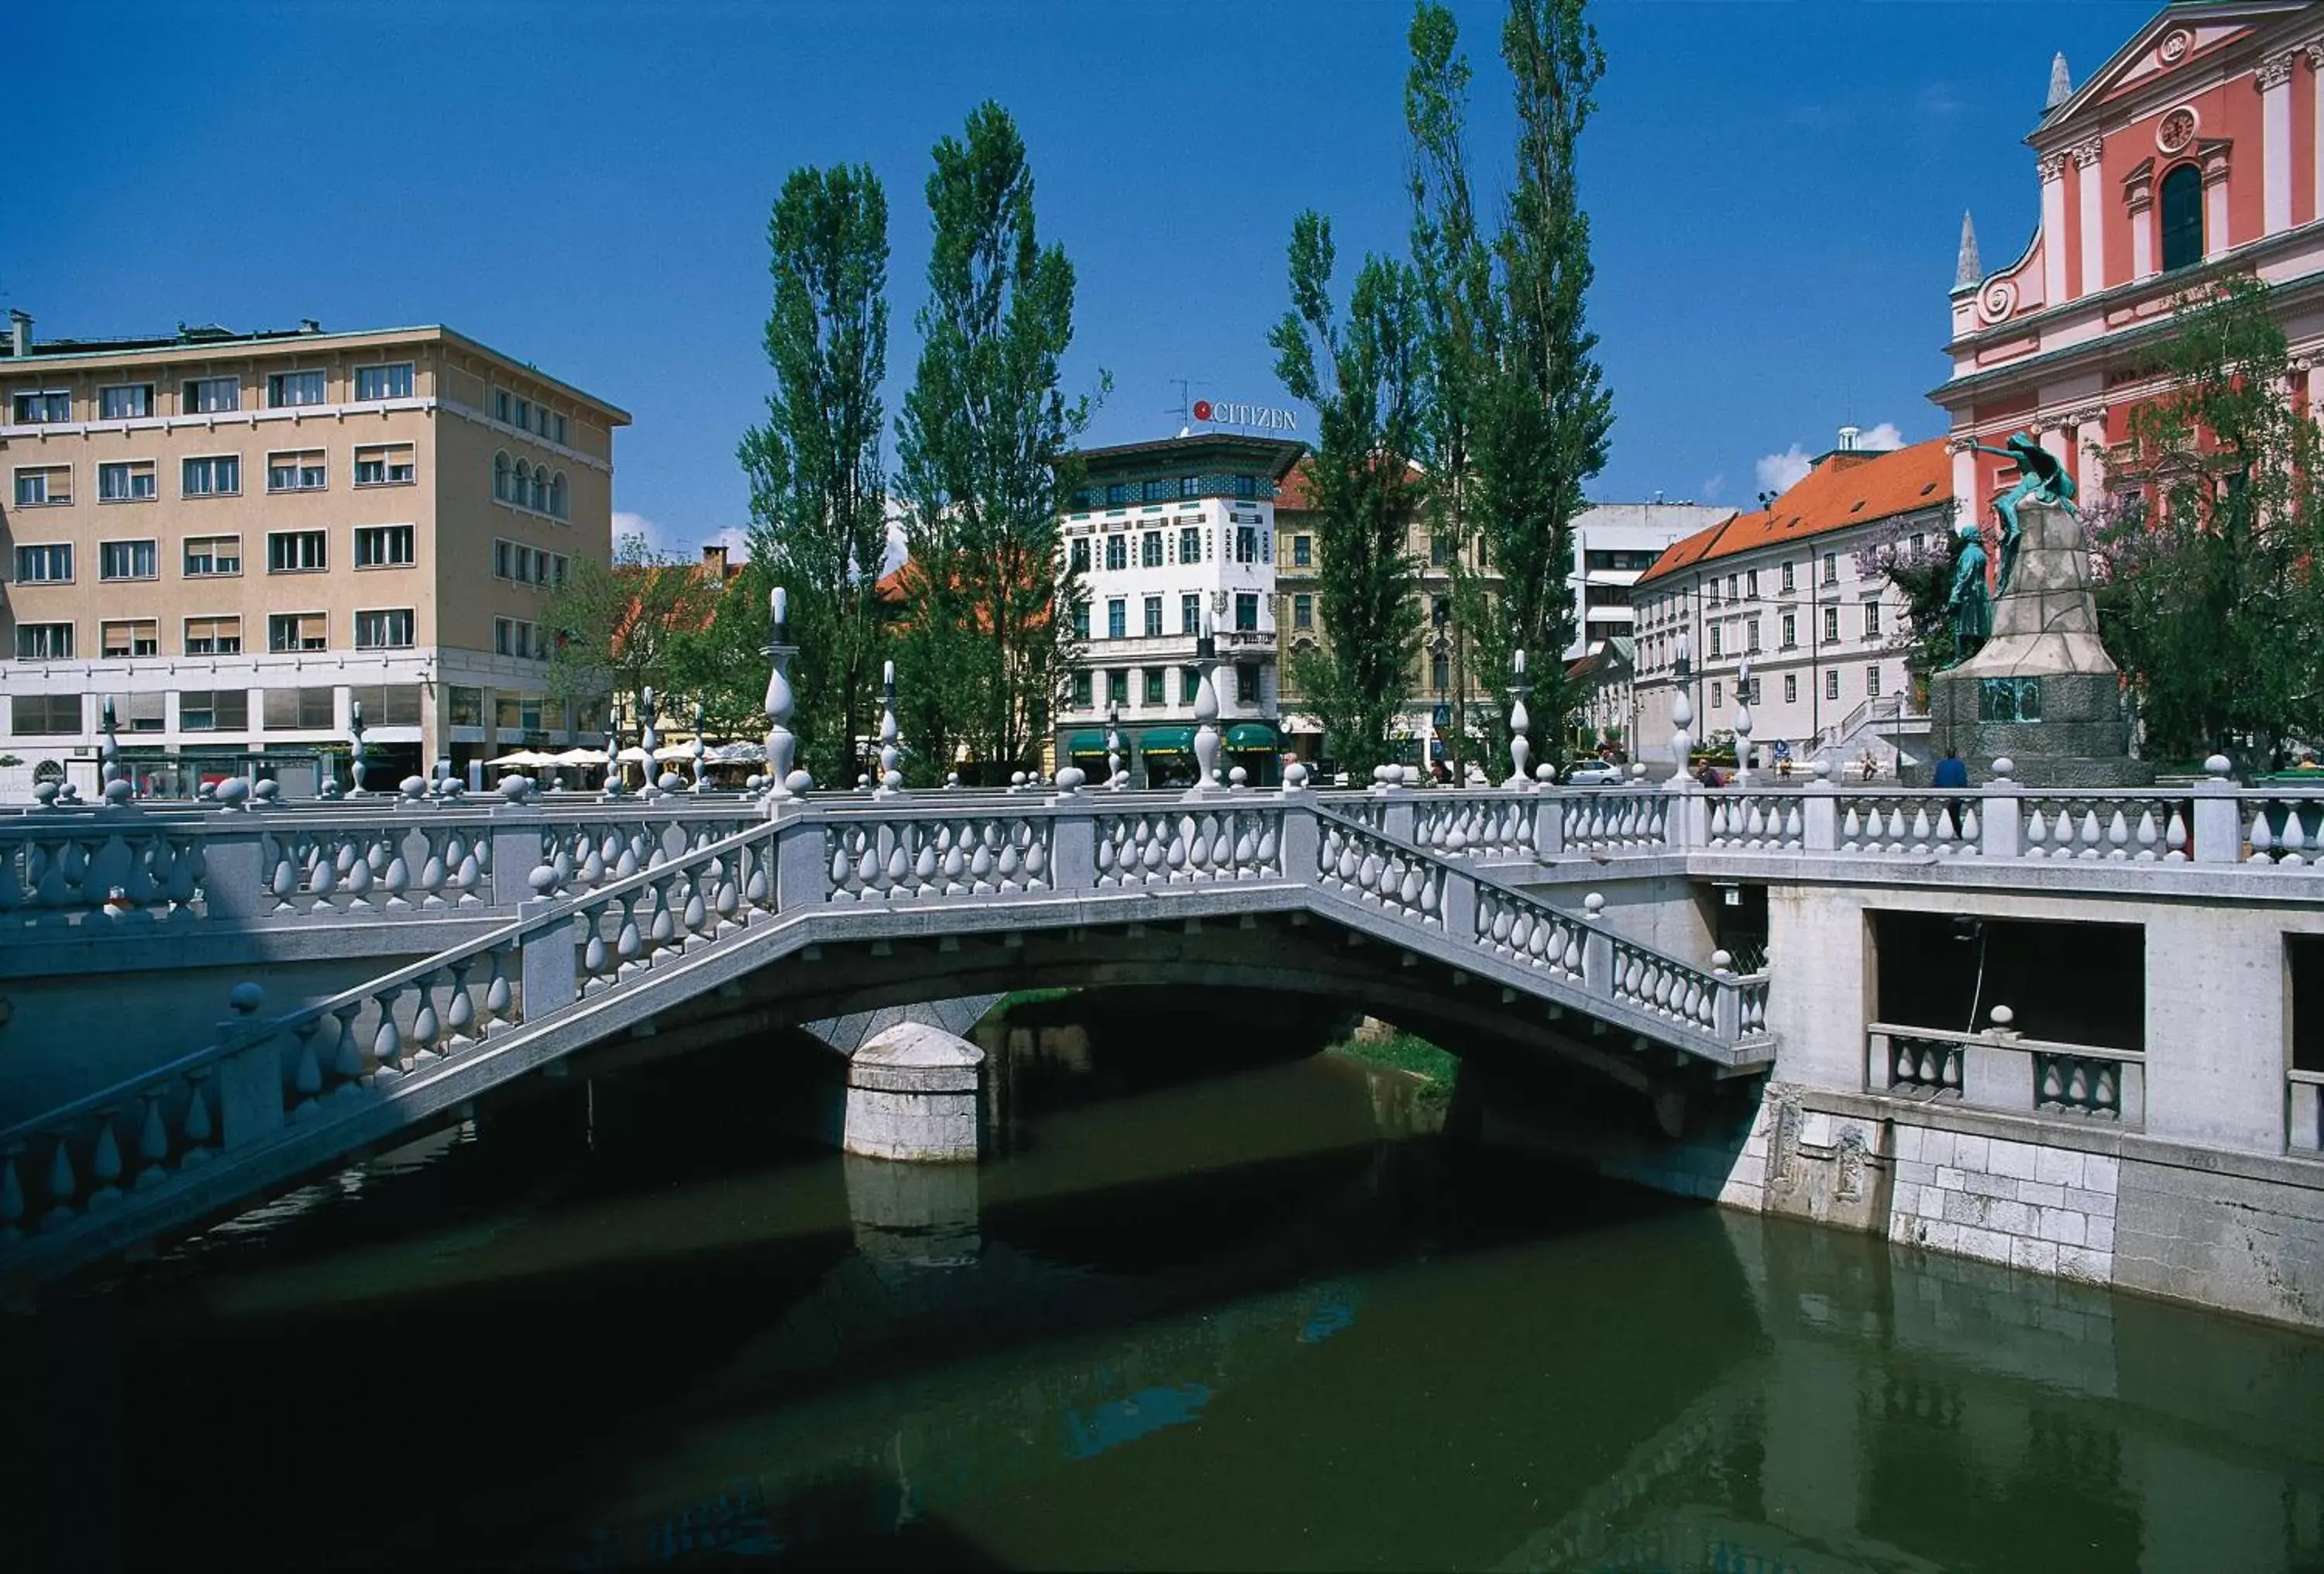 Nearby landmark in Ahotel Ljubljana